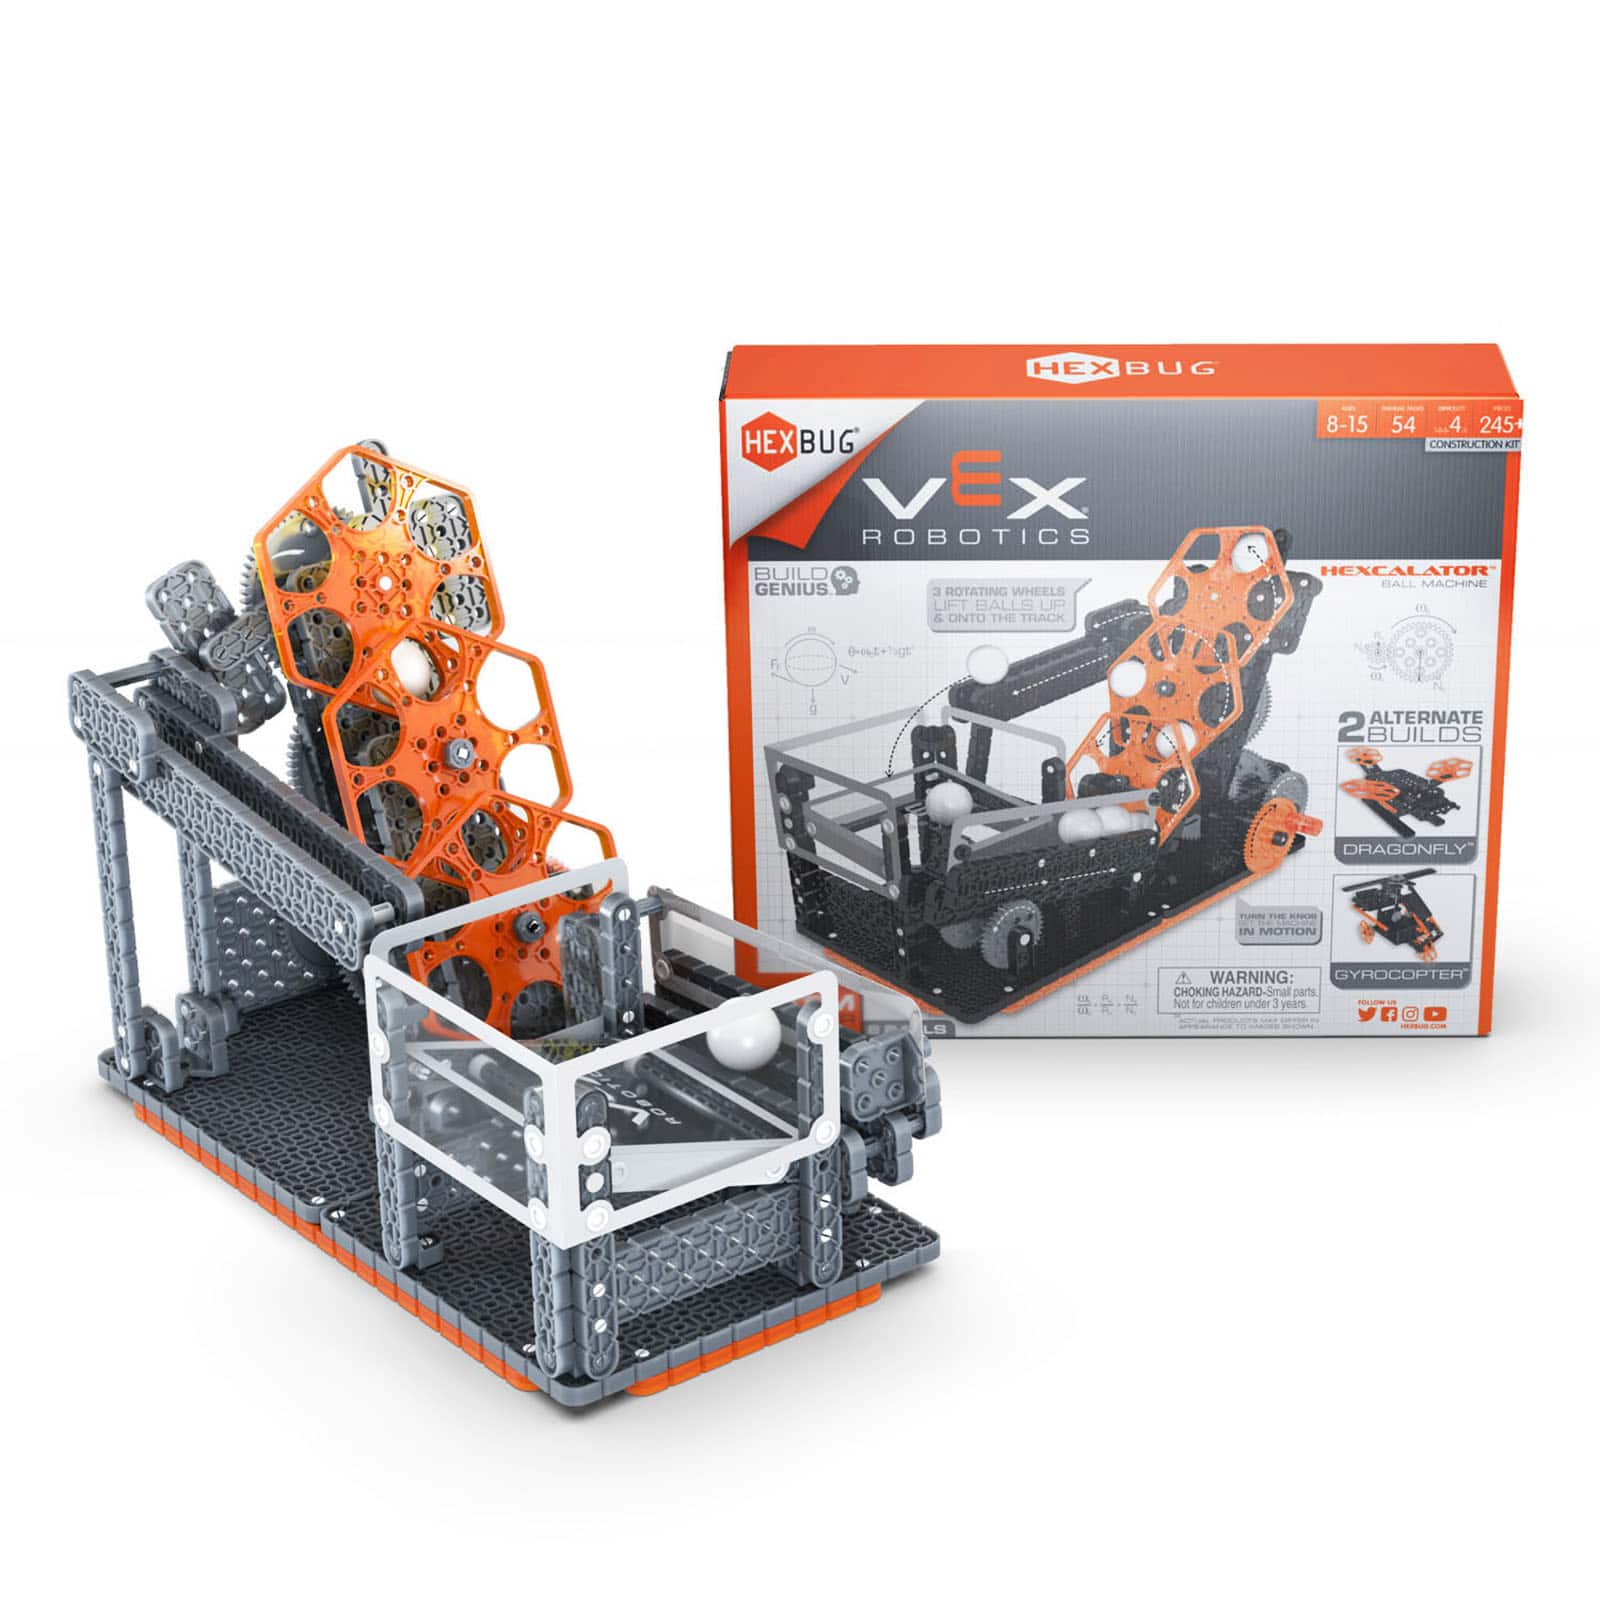 HEXBUG Vex Robotics Robotic Hexcalator Stem Genius Kids Educational Toy Gift for sale online 